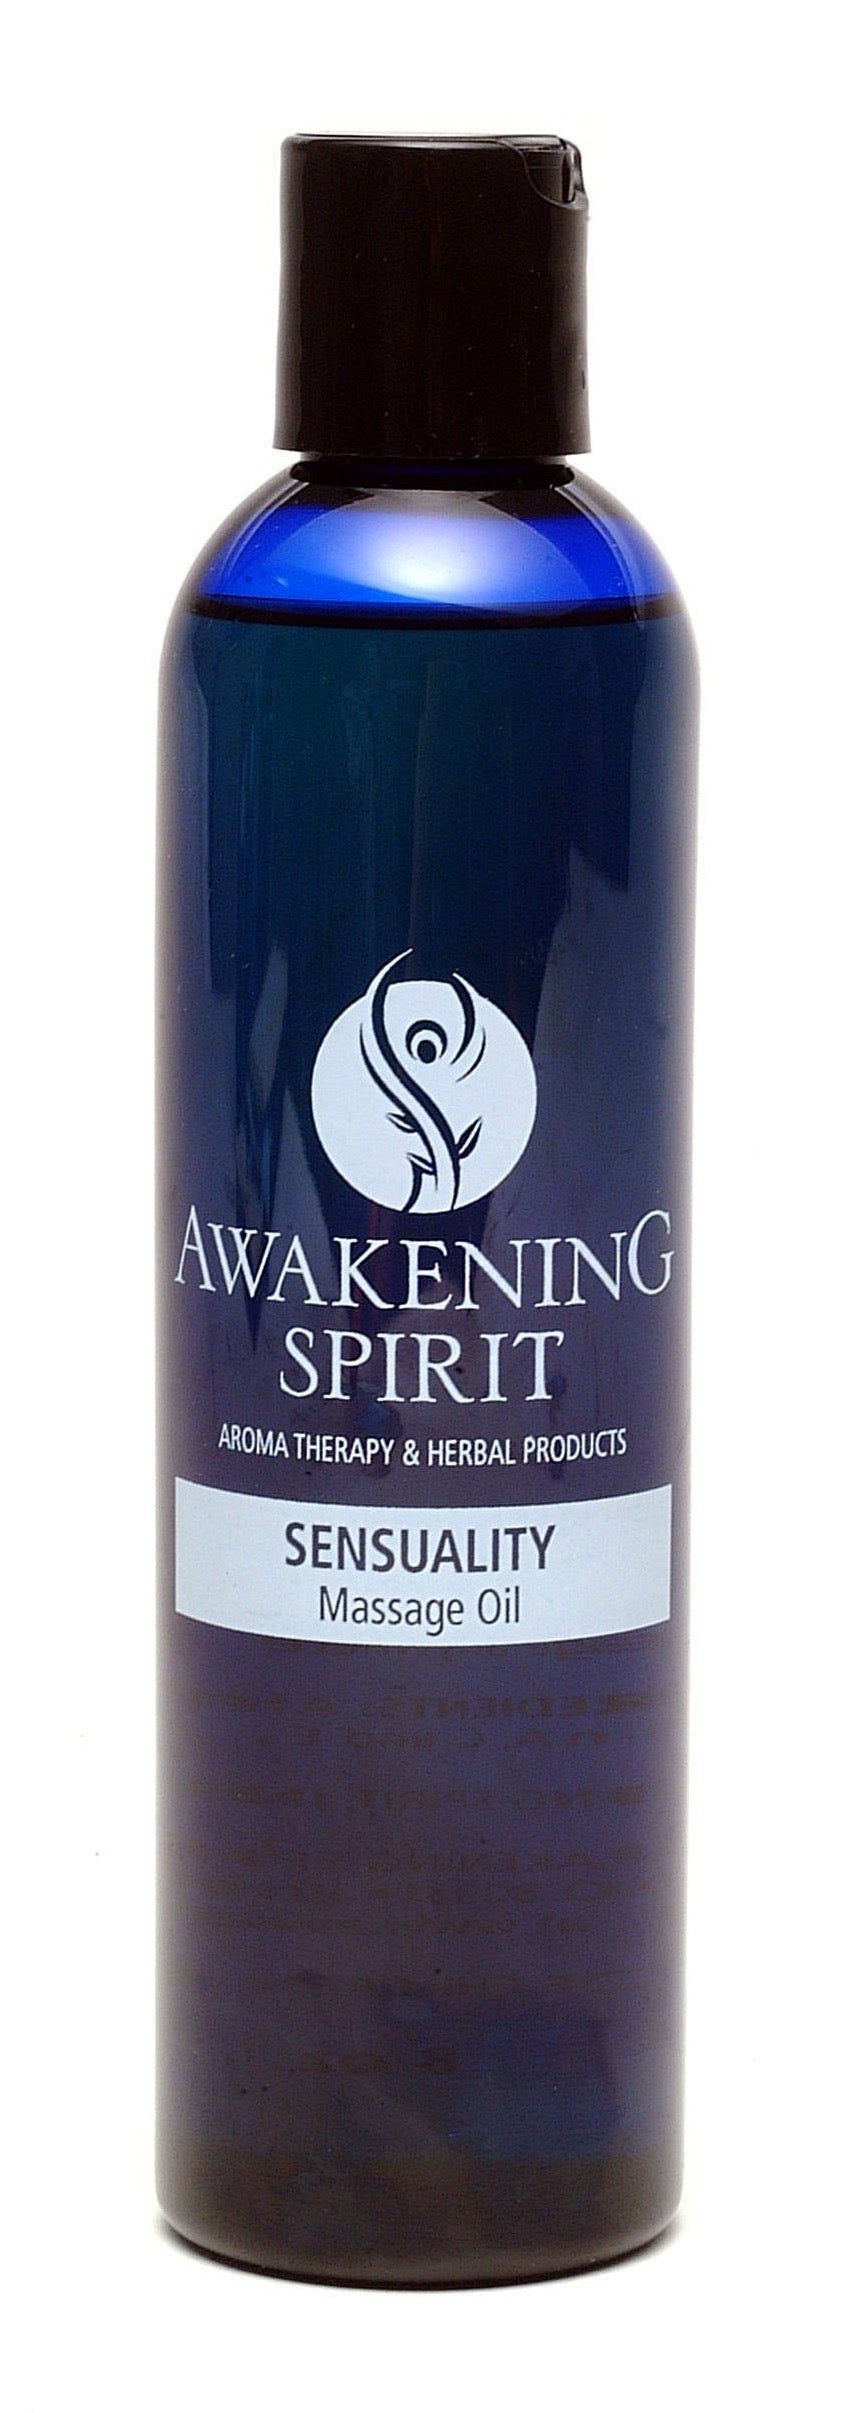 Sensuality Massage Oil